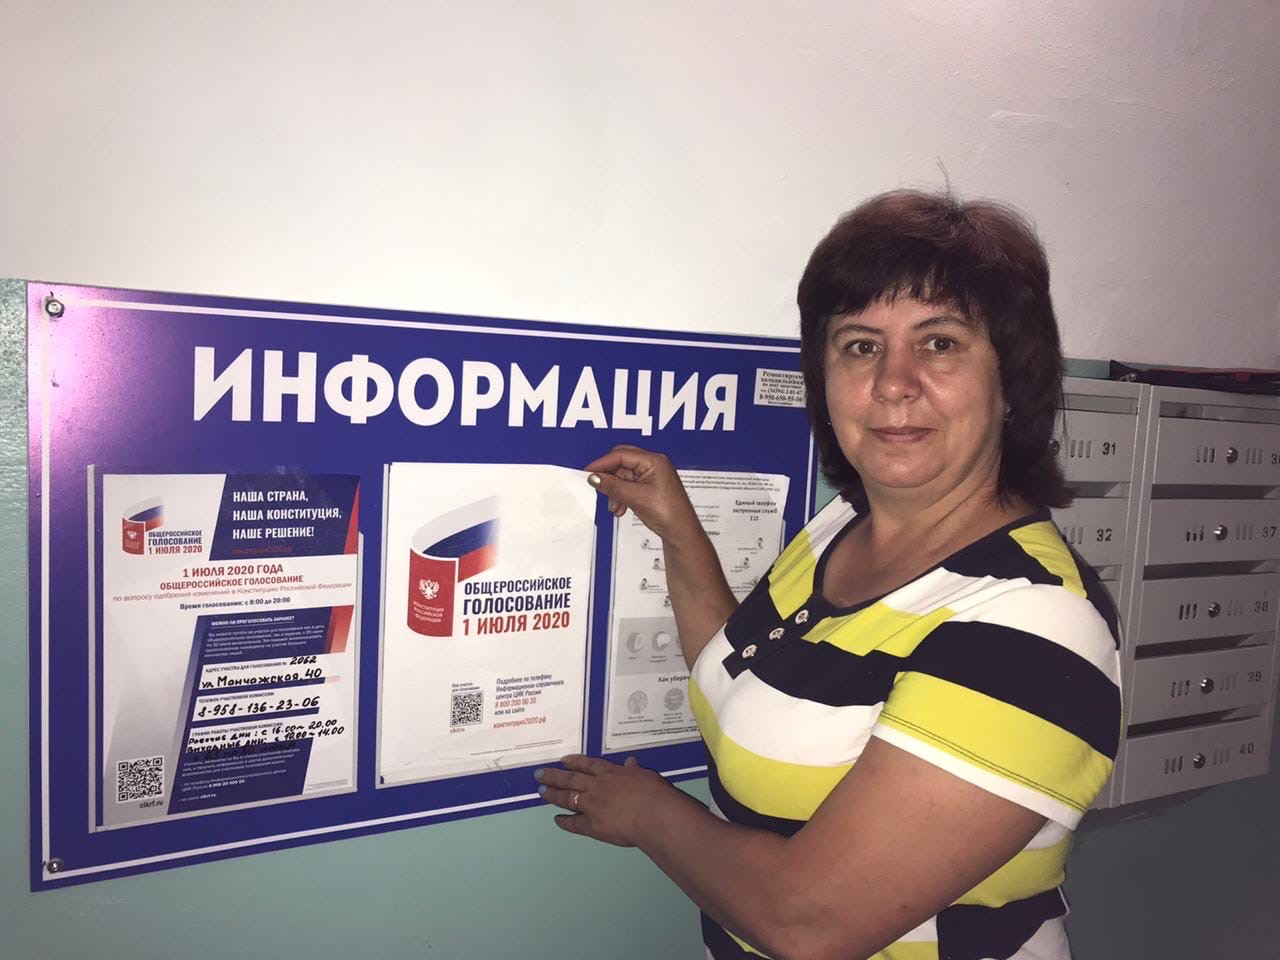 Адреса где можно проголосовать в москве. Где можно проголосовать. Как можно проголосовать. Участковая избирательная комиссия номер 1 Москва.